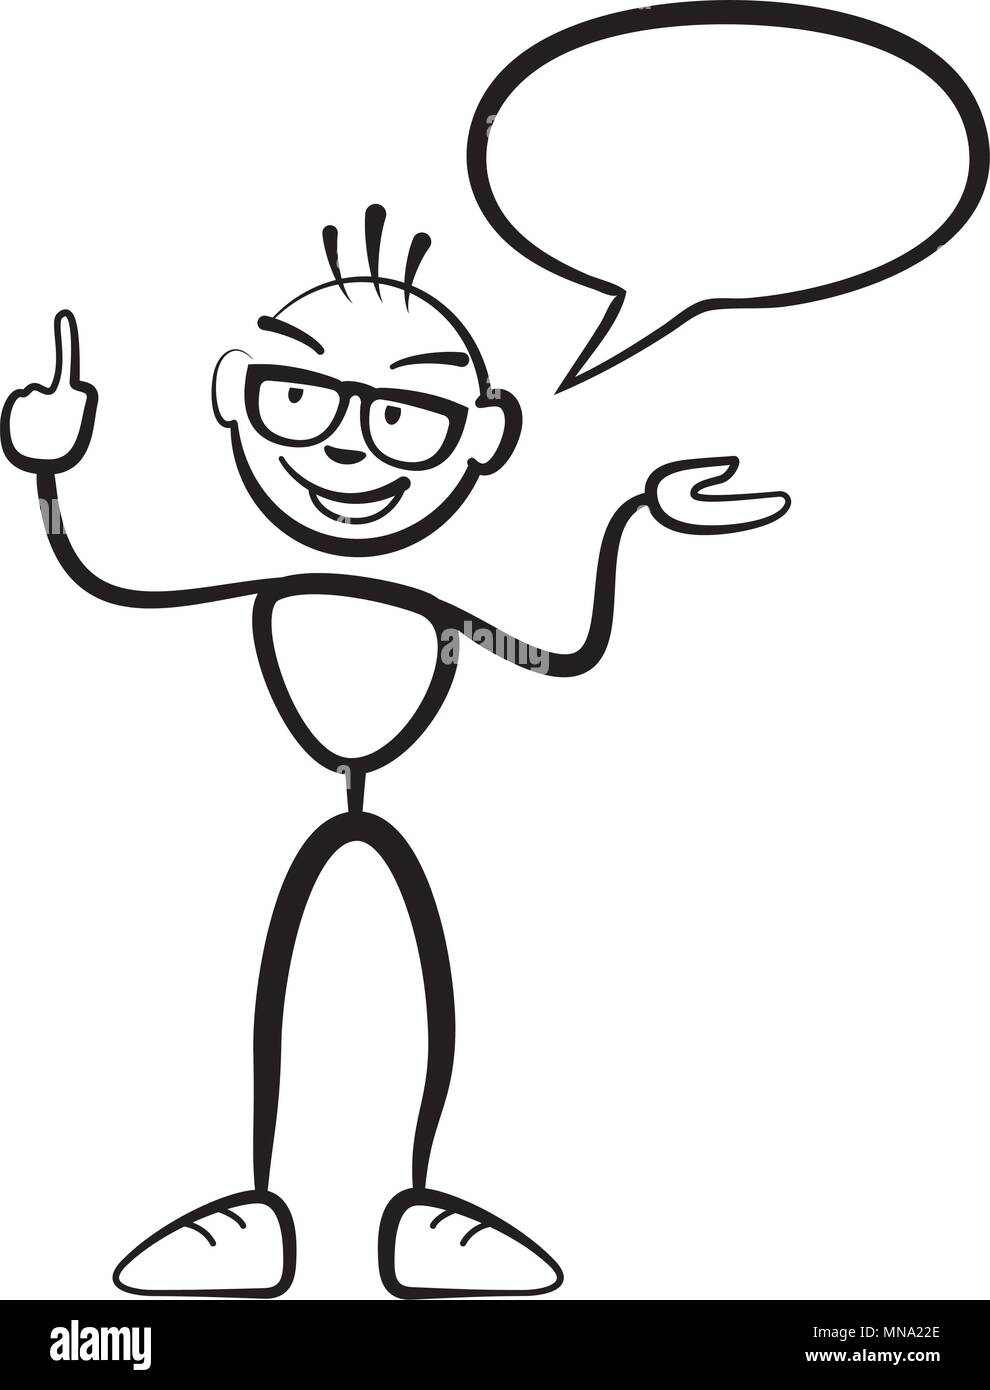 Stick figure homme persona avec bulle, Stickman dessin vectoriel sur fond blanc Illustration de Vecteur